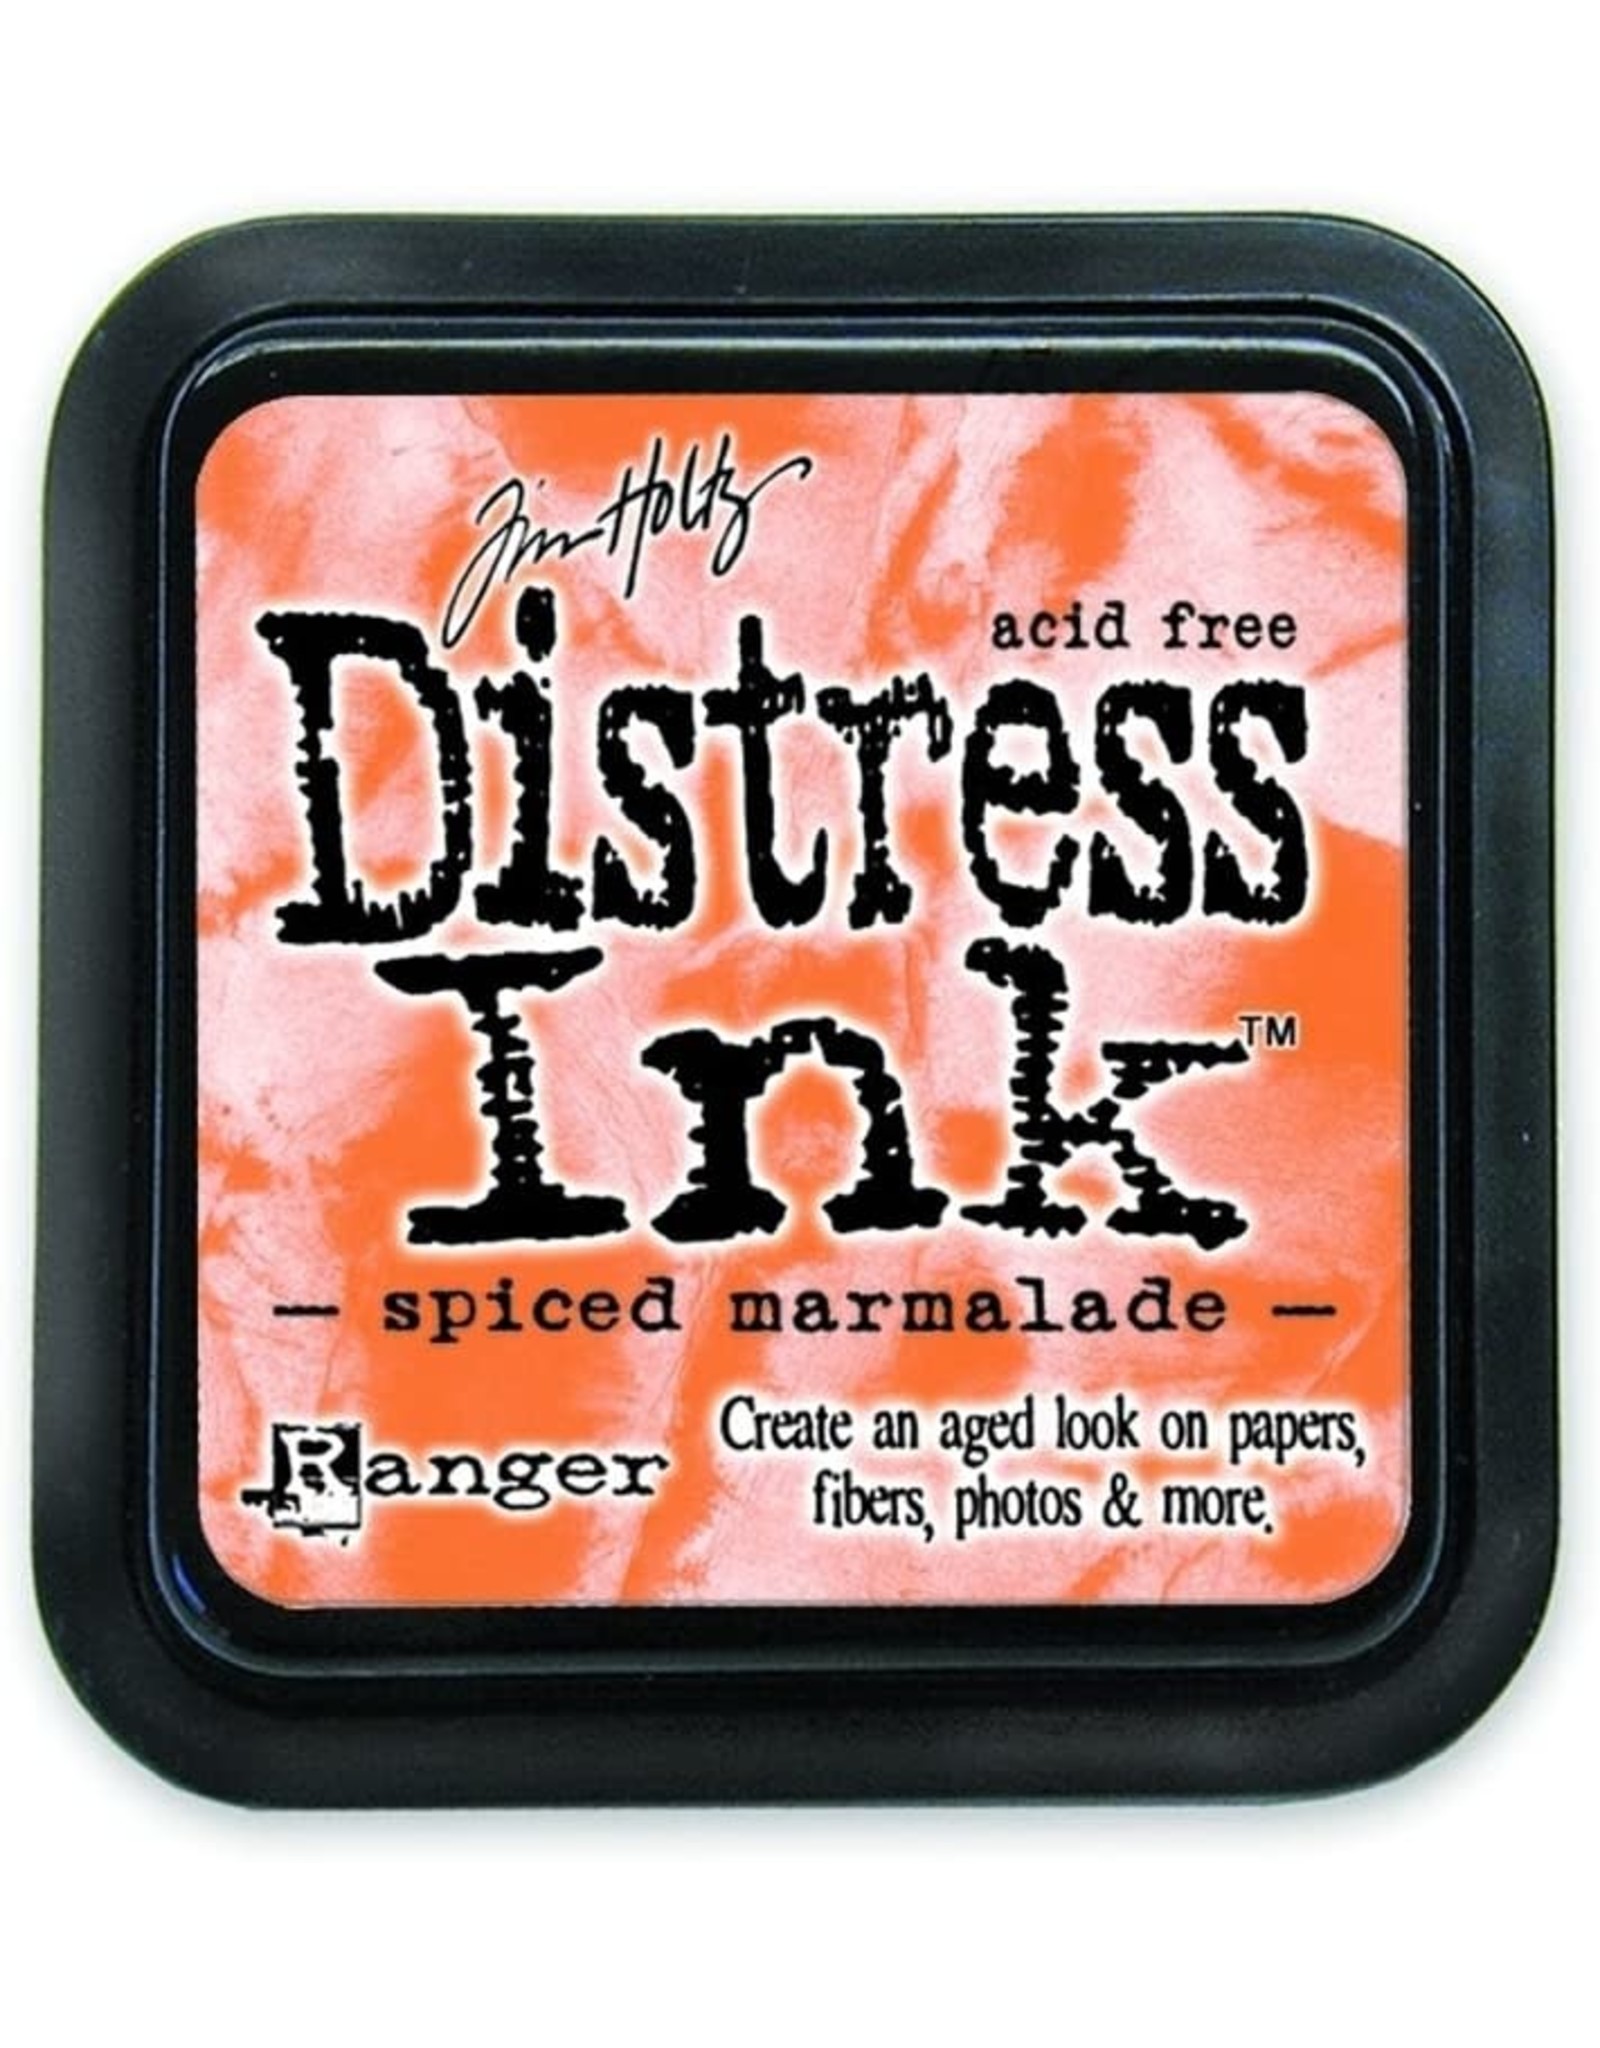 Tim Holtz - Ranger Distress Ink Spiced Marmalade